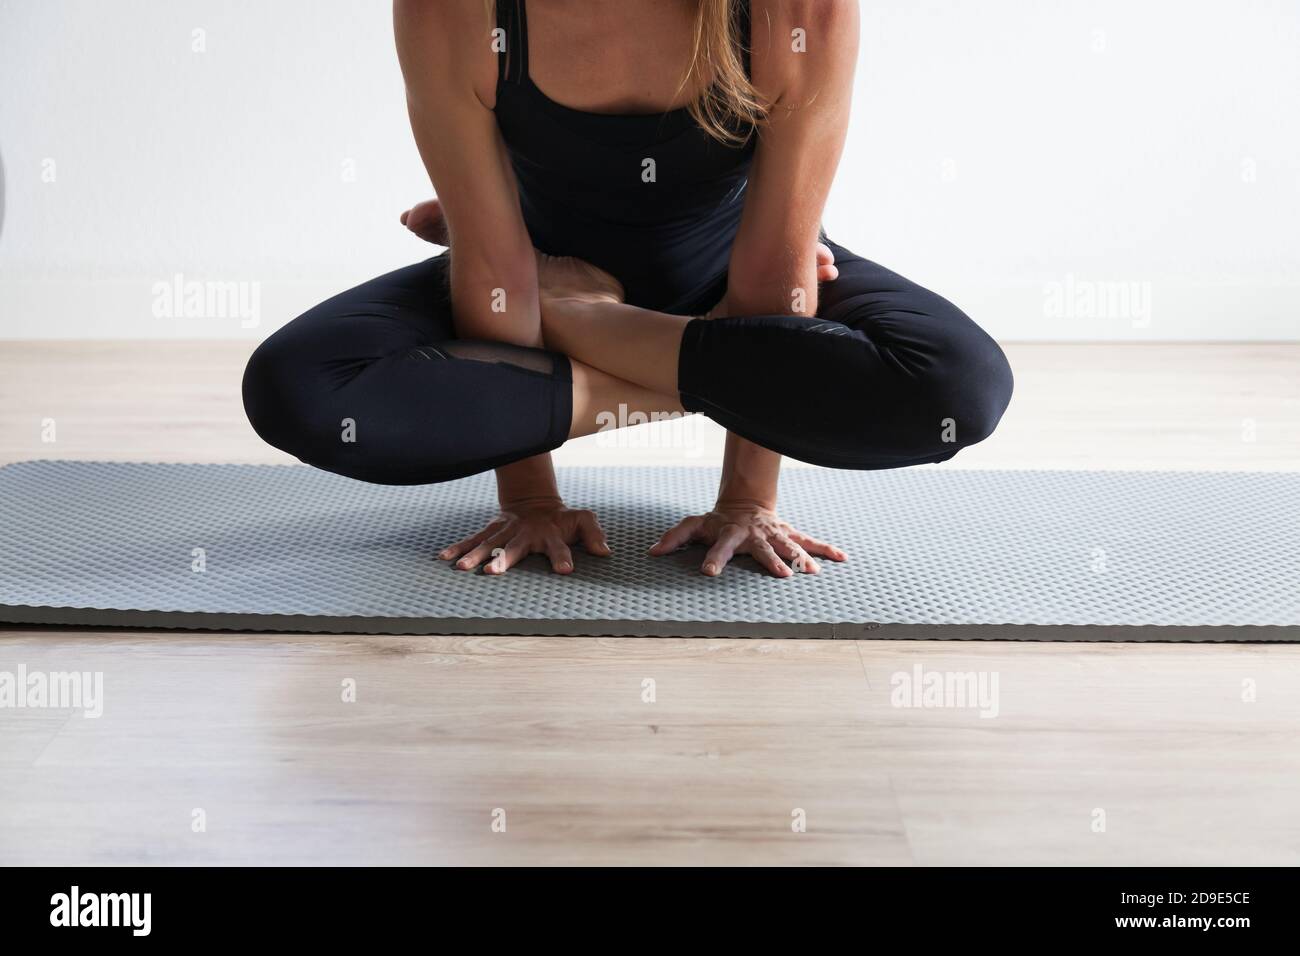 Femme sportive pratiquant le yoga dans un studio de loft lumineux Banque D'Images